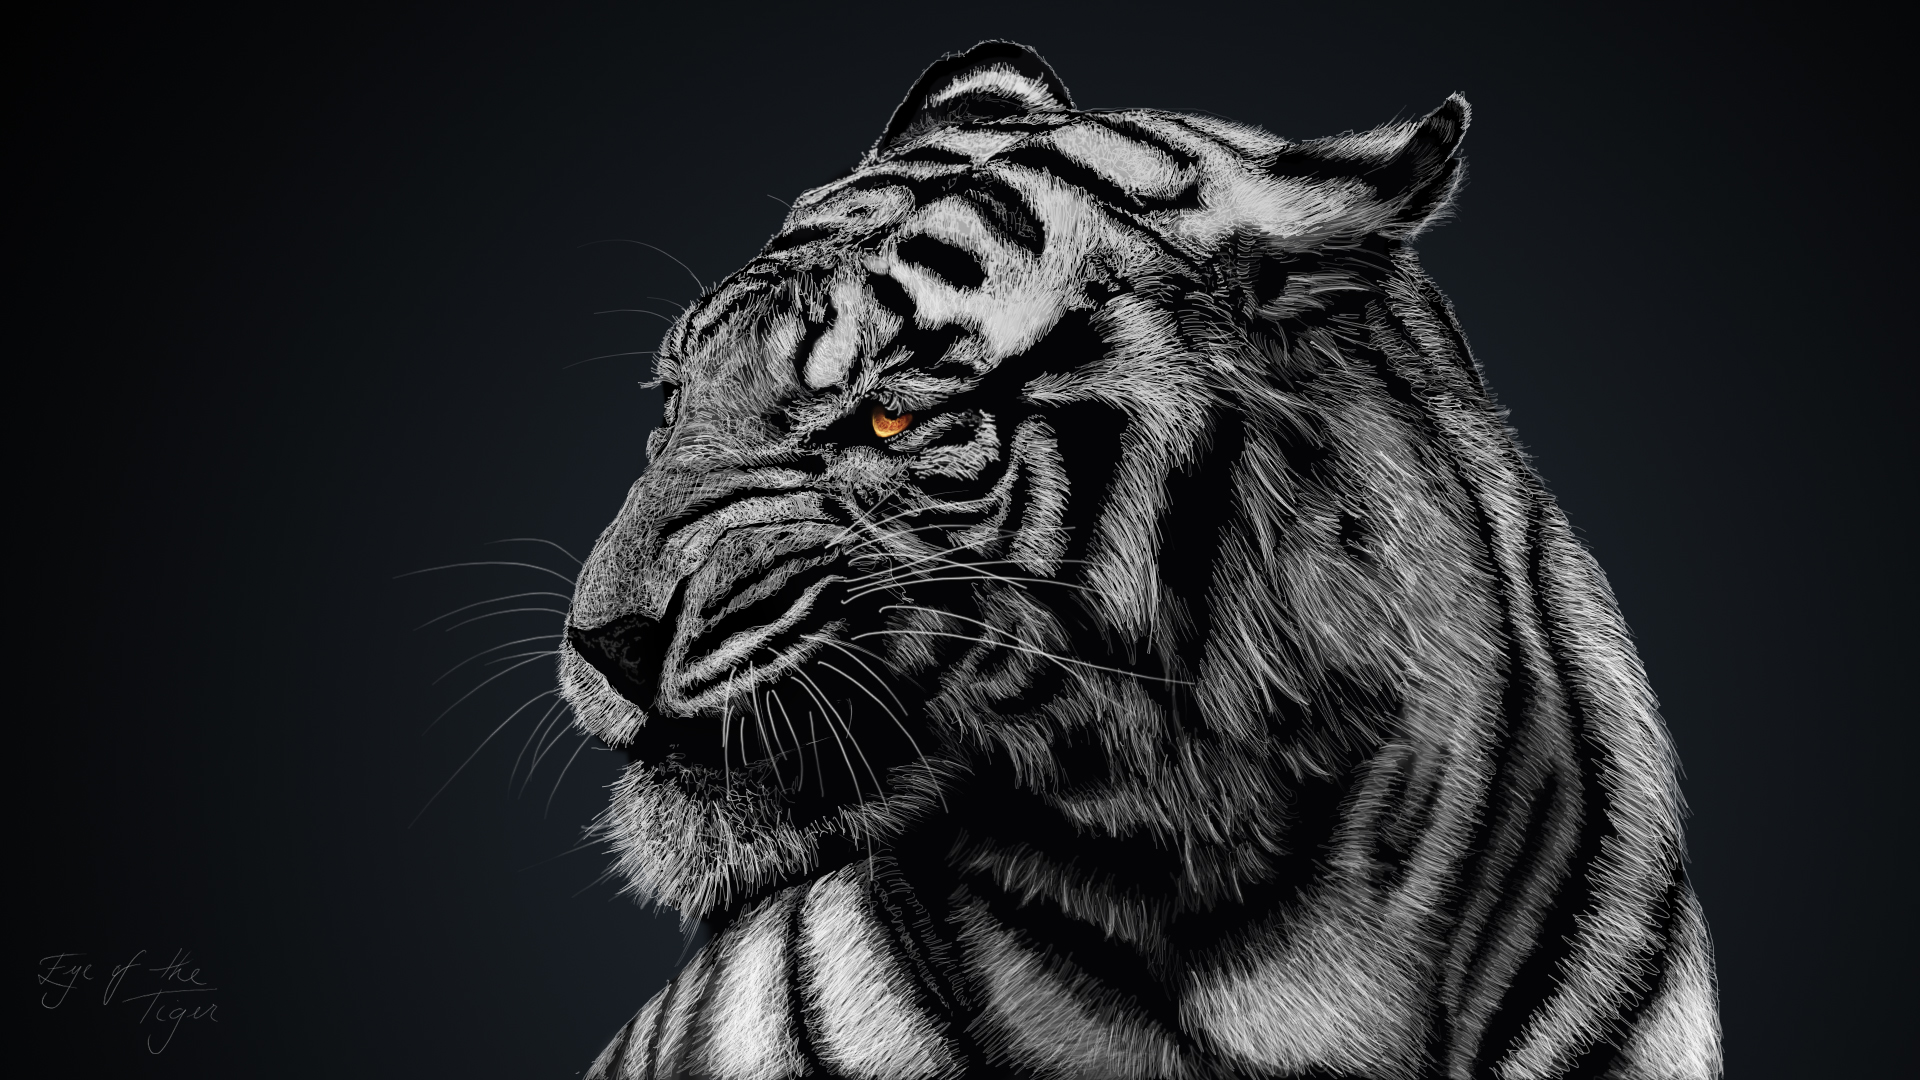 Tiger Artwork HD693636362 - Tiger Artwork HD - Tiger, Leopard, Artwork